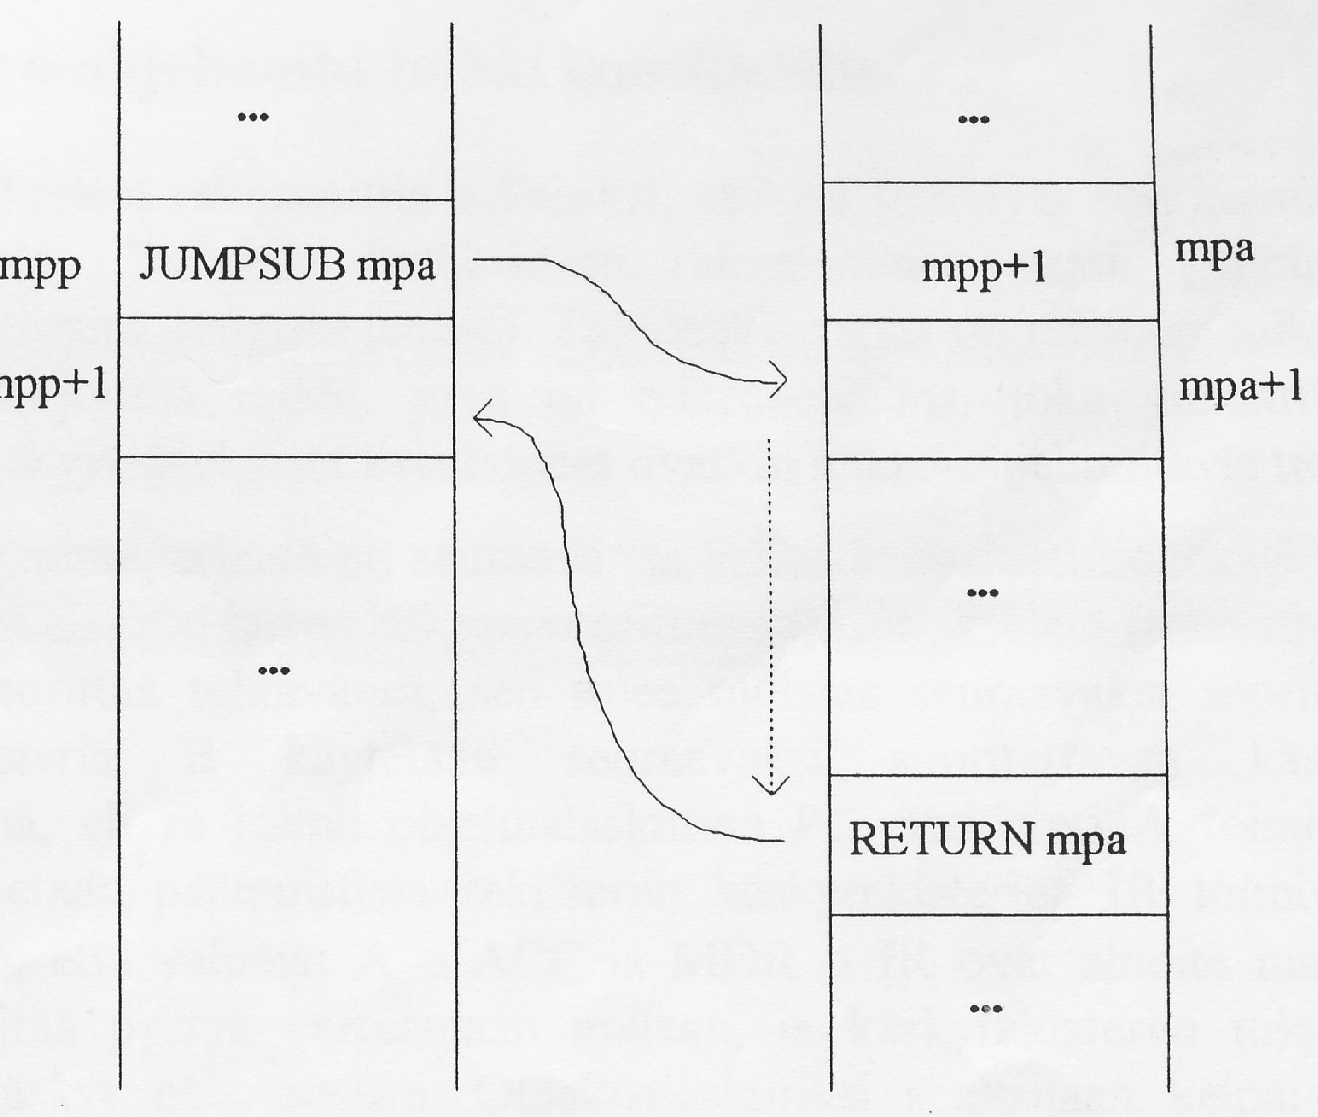 Aliohjelman toimintamekanismi Olkoon muistipaikassa mpp käsky JUMPSUB mpa. Silloin muistipaikkaan mpa kirjoitetaan paluuosoite mpp+1 ja suoritus jatkuu osoitteesta mpa+1.